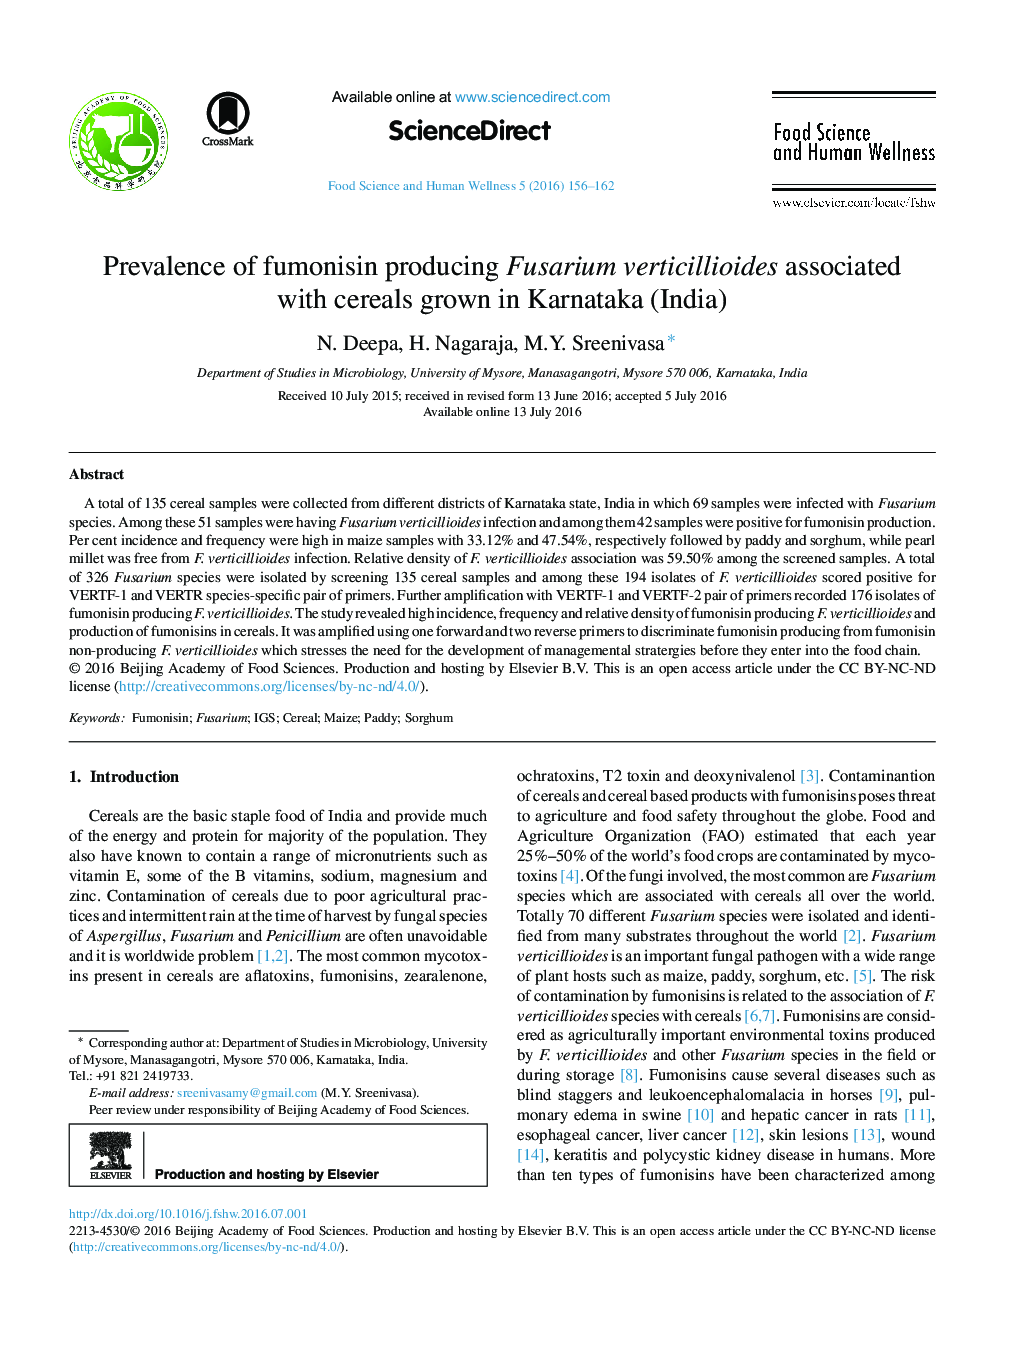 شیوع fumonisin با تولید Fusarium verticillioides مرتبط با رشد غلات در کارناتاکا (هند)